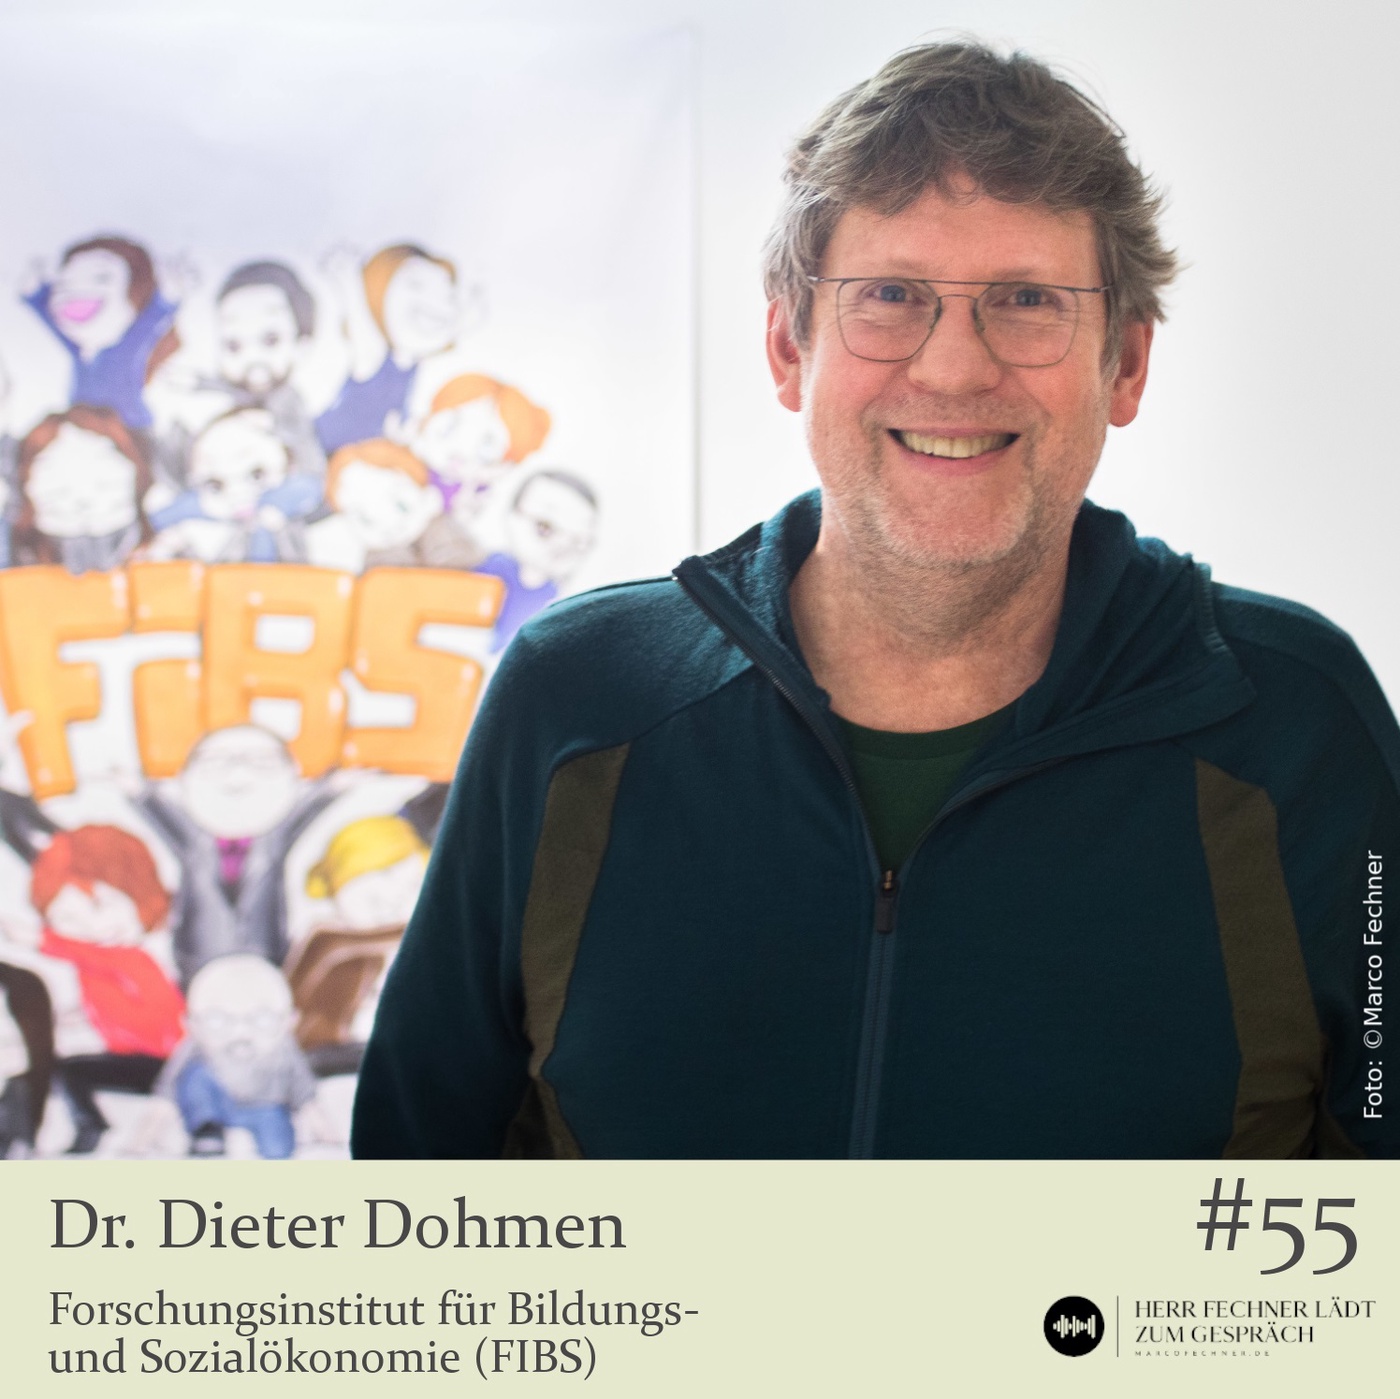 Dr. Dieter Dohmen, Forschungsinstitut für Bildungs- und Sozialökonomie